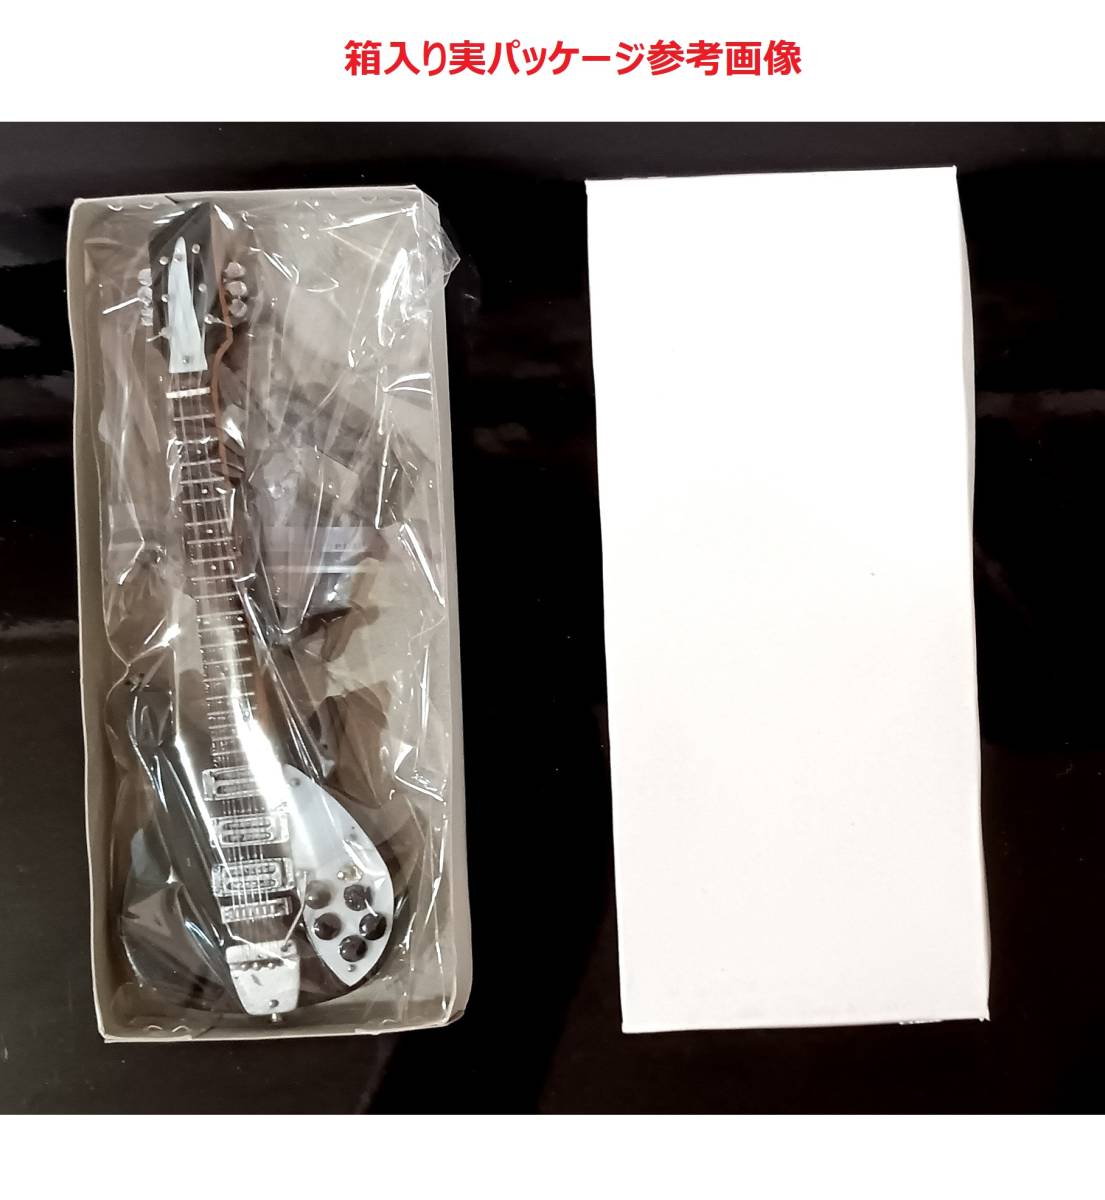 METALLICA2ミニチュアギター15 cmの2本セット。ミニ楽器